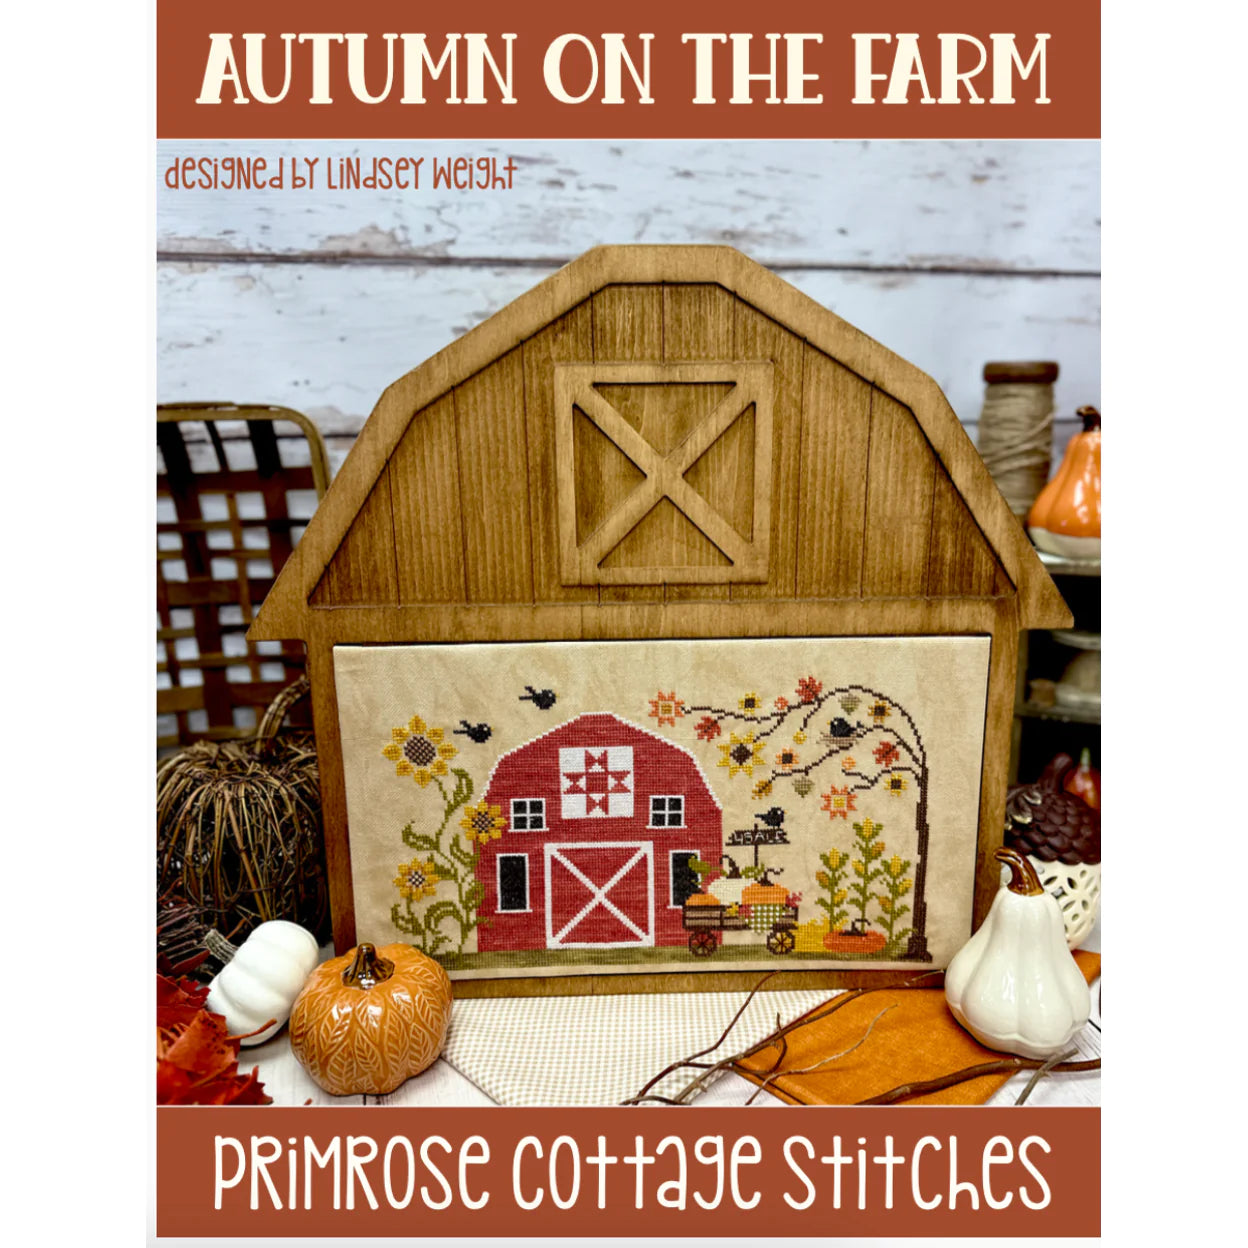 Autumn on the Farm - Primrose Cottage Stitches